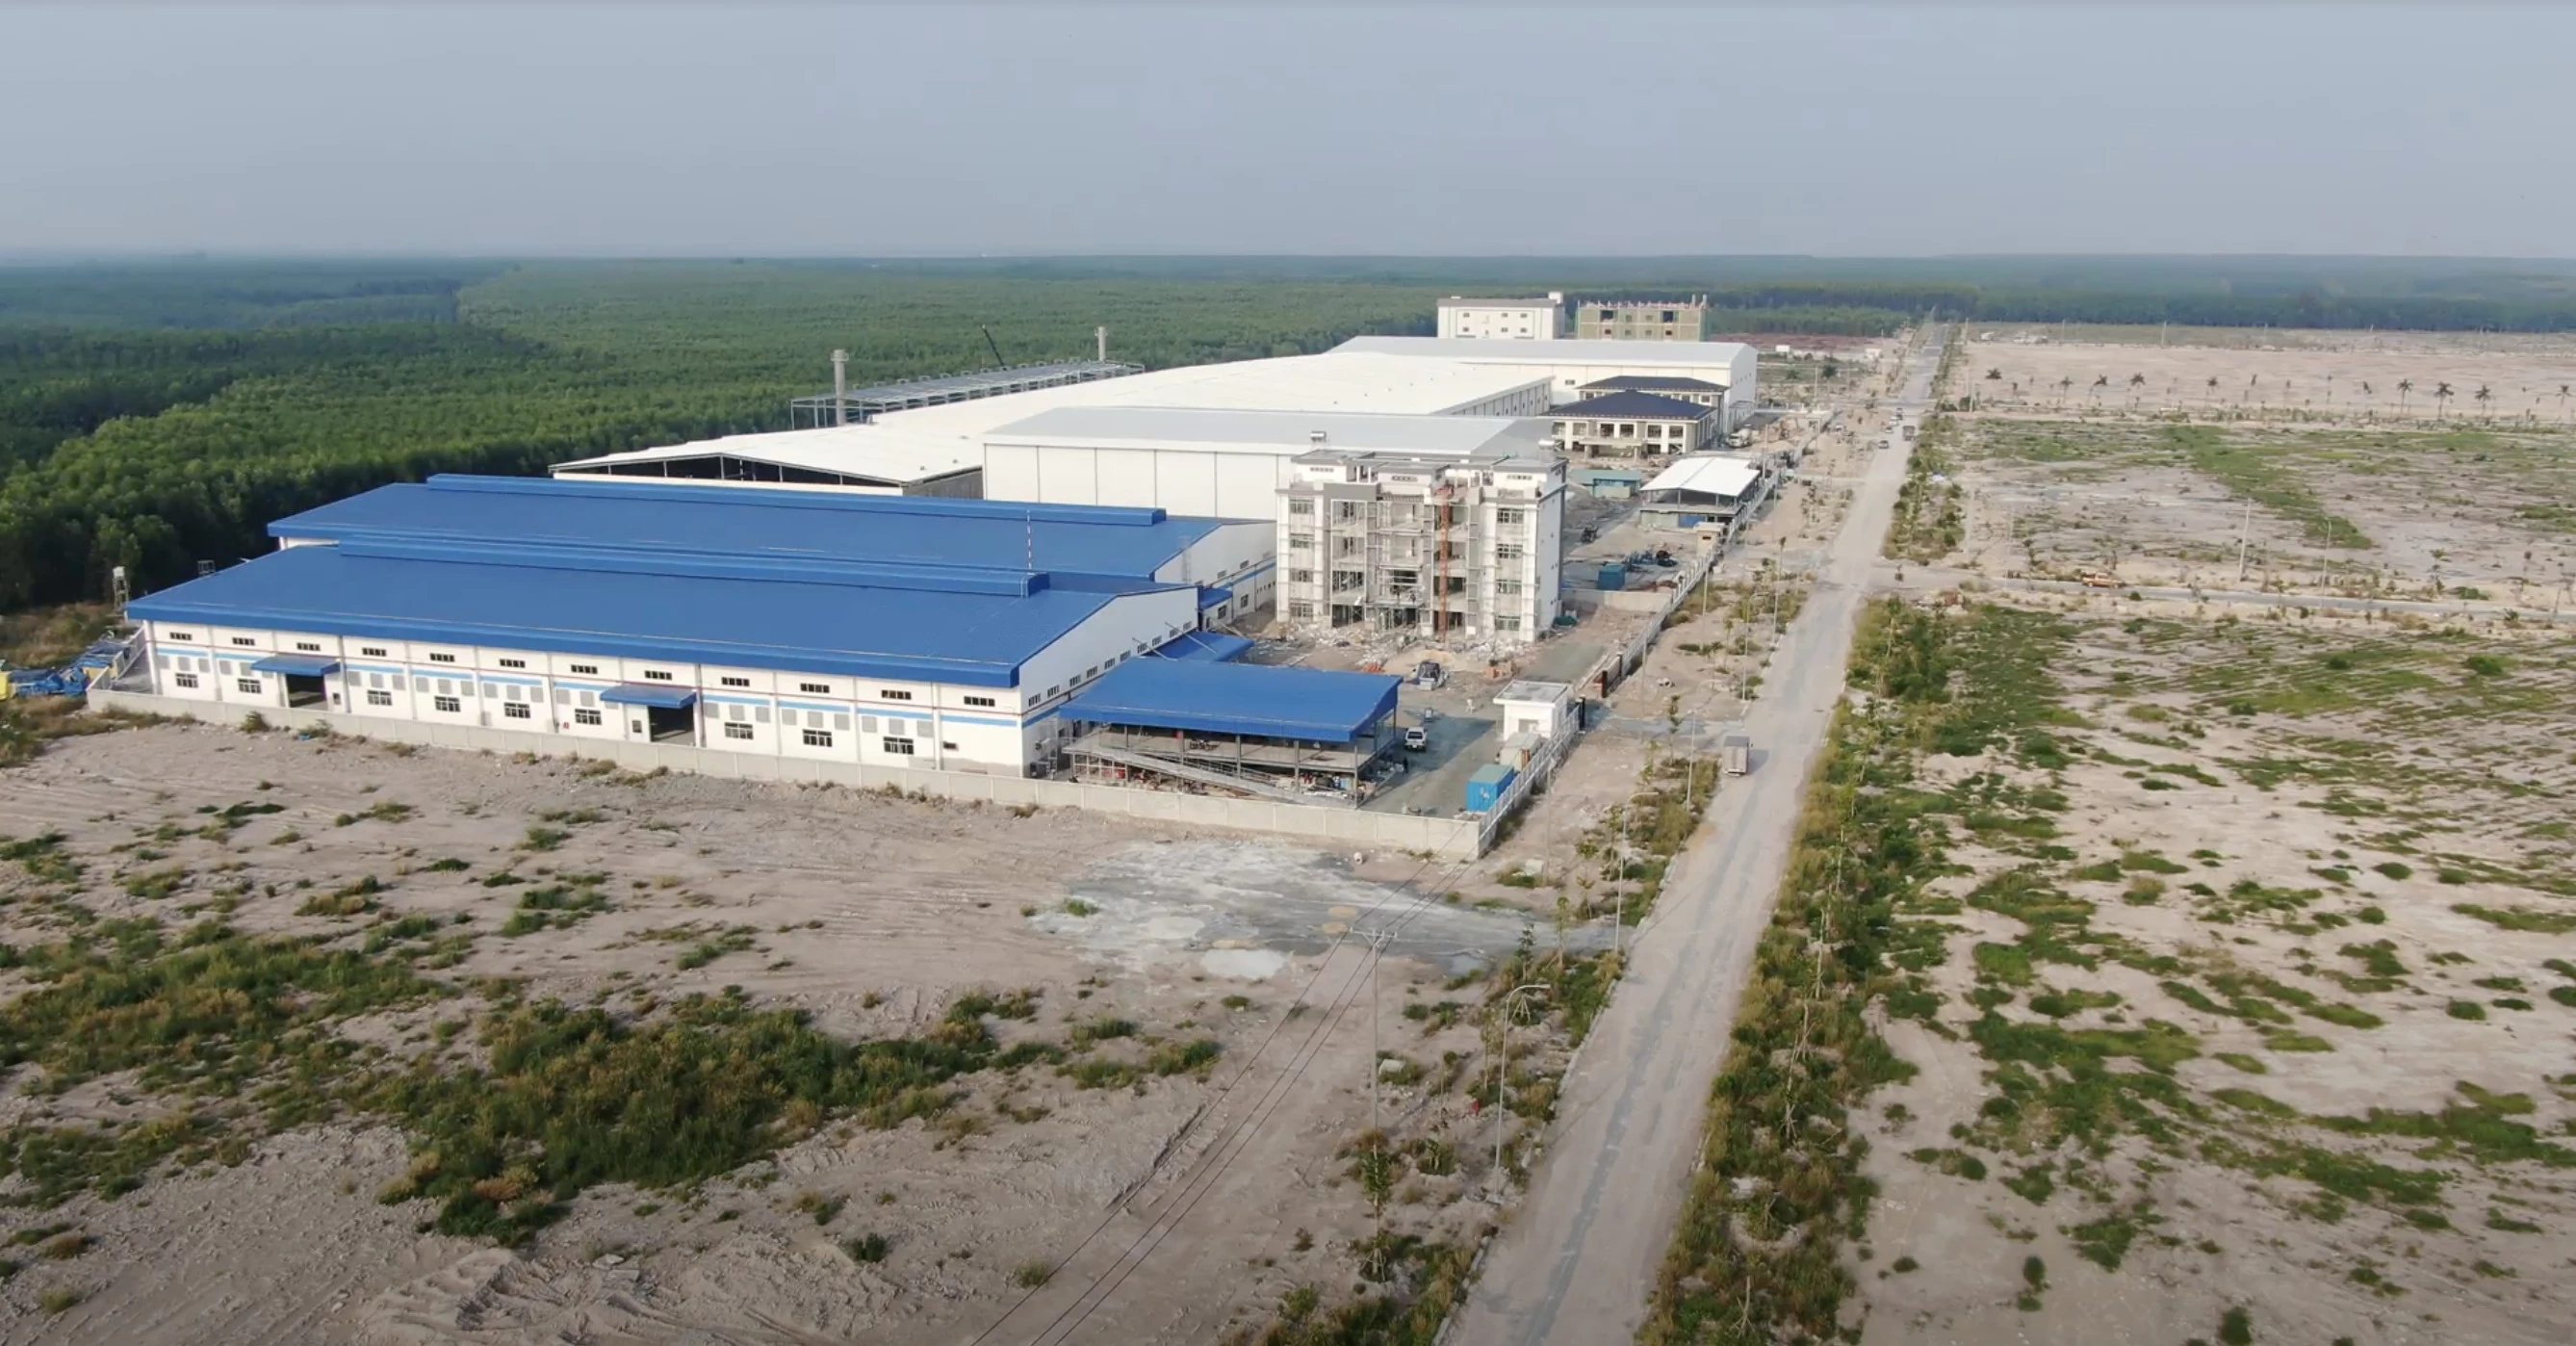 Một nhà máy đang mọc lên ở KCN Minh Hưng Sikico có diện tích 655 hecta (H.Hớn Quản, Bình Phước).